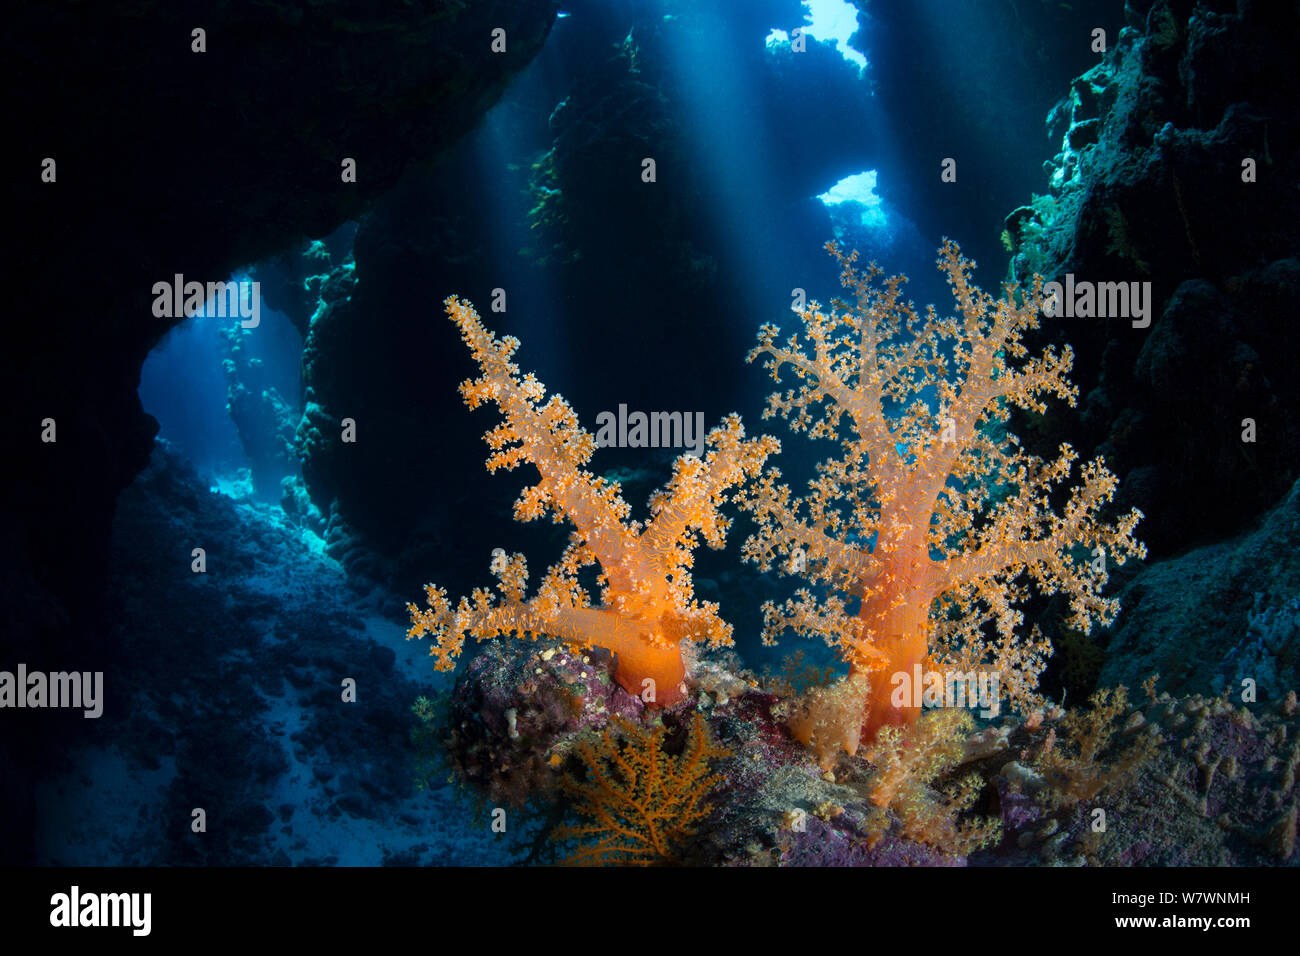 Paar Weichkorallen (Scleronephthya Corymbosa) wachsen sie in Cavern im Korallenriff. Diese Art ist typisch für die Höhle Lebensräume. Uum Karerim, St Johns Riff. Ägypten. Das rote Meer. Stockfoto